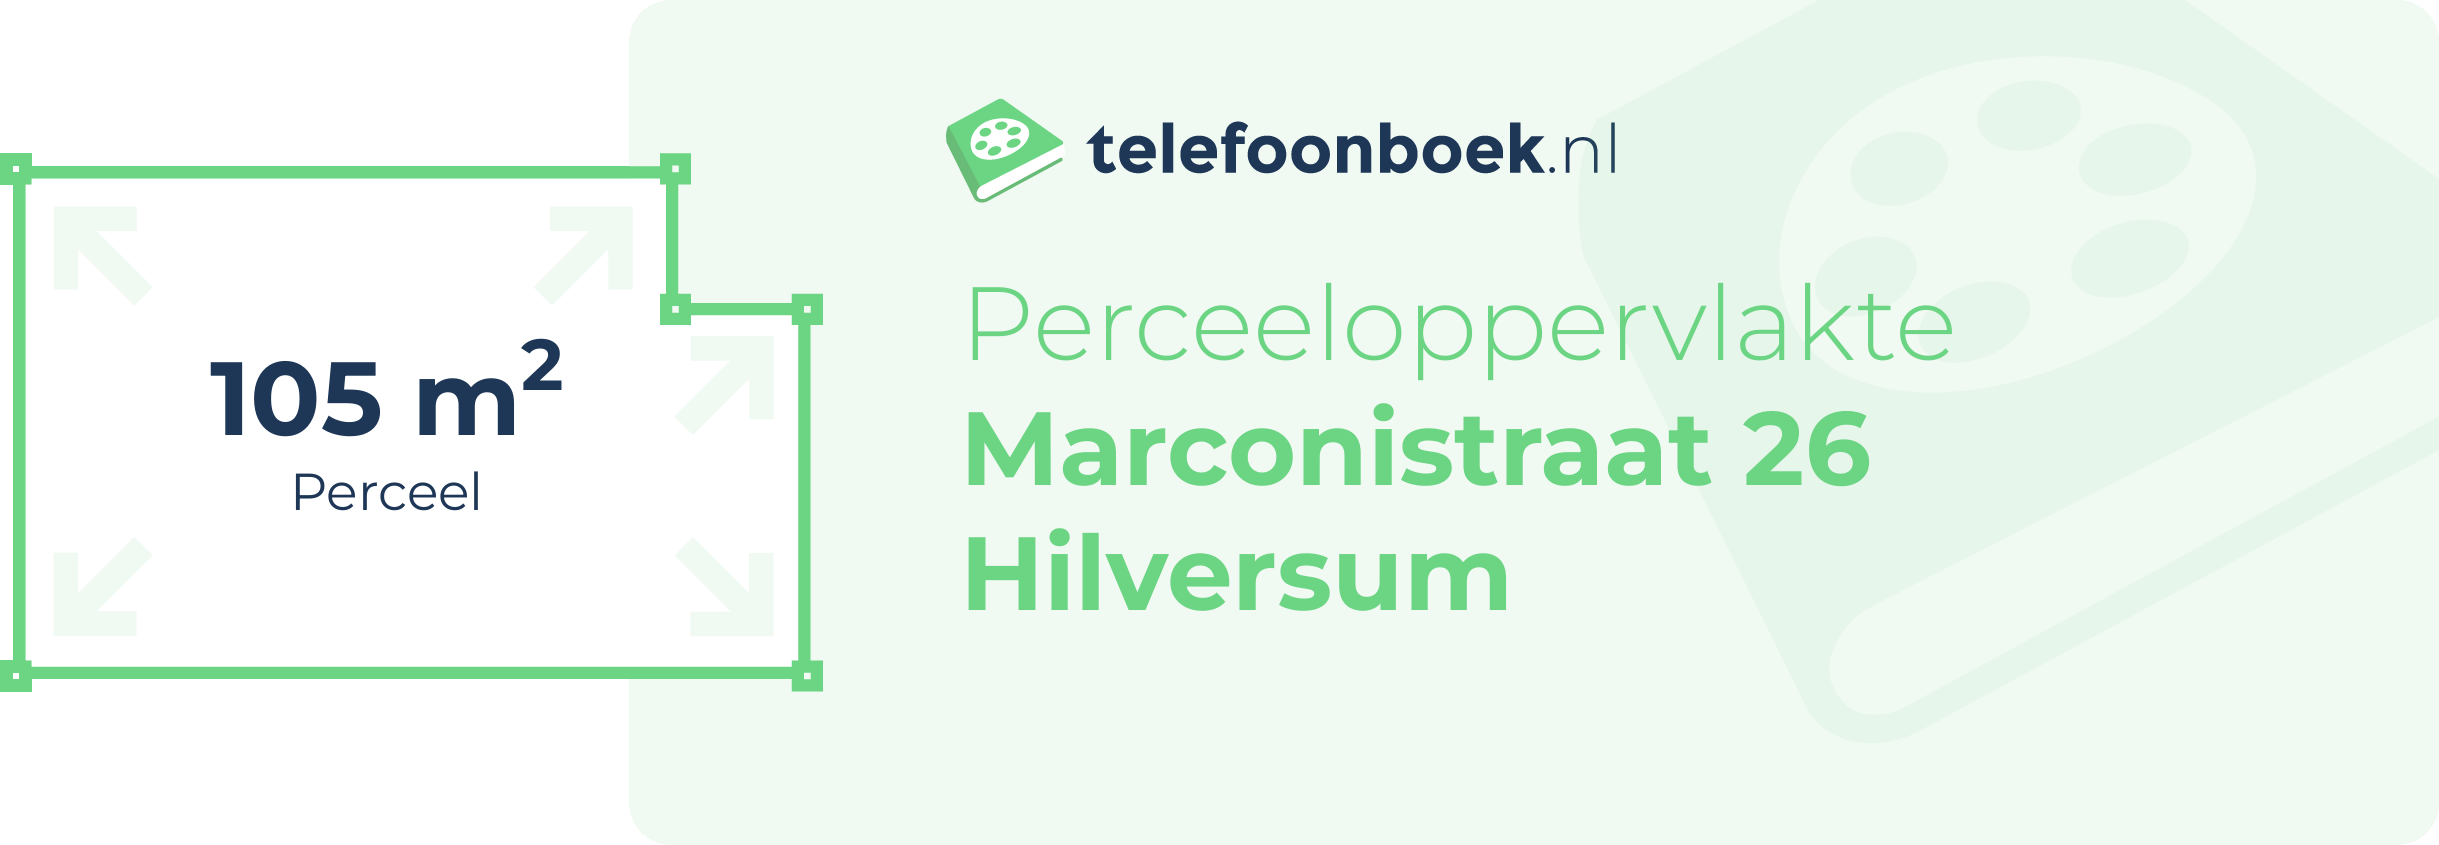 Perceeloppervlakte Marconistraat 26 Hilversum